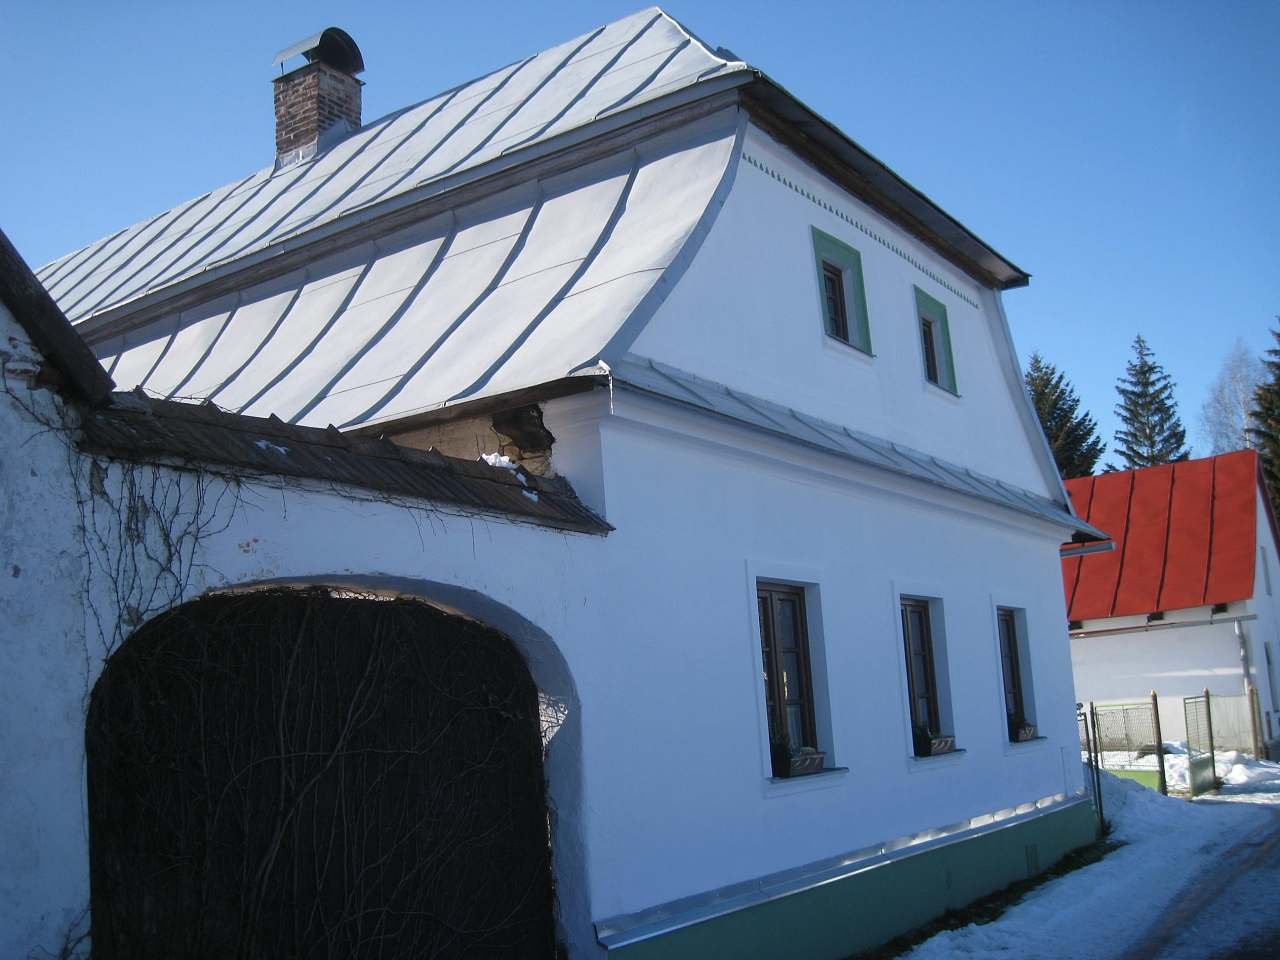 Jirka's cottage